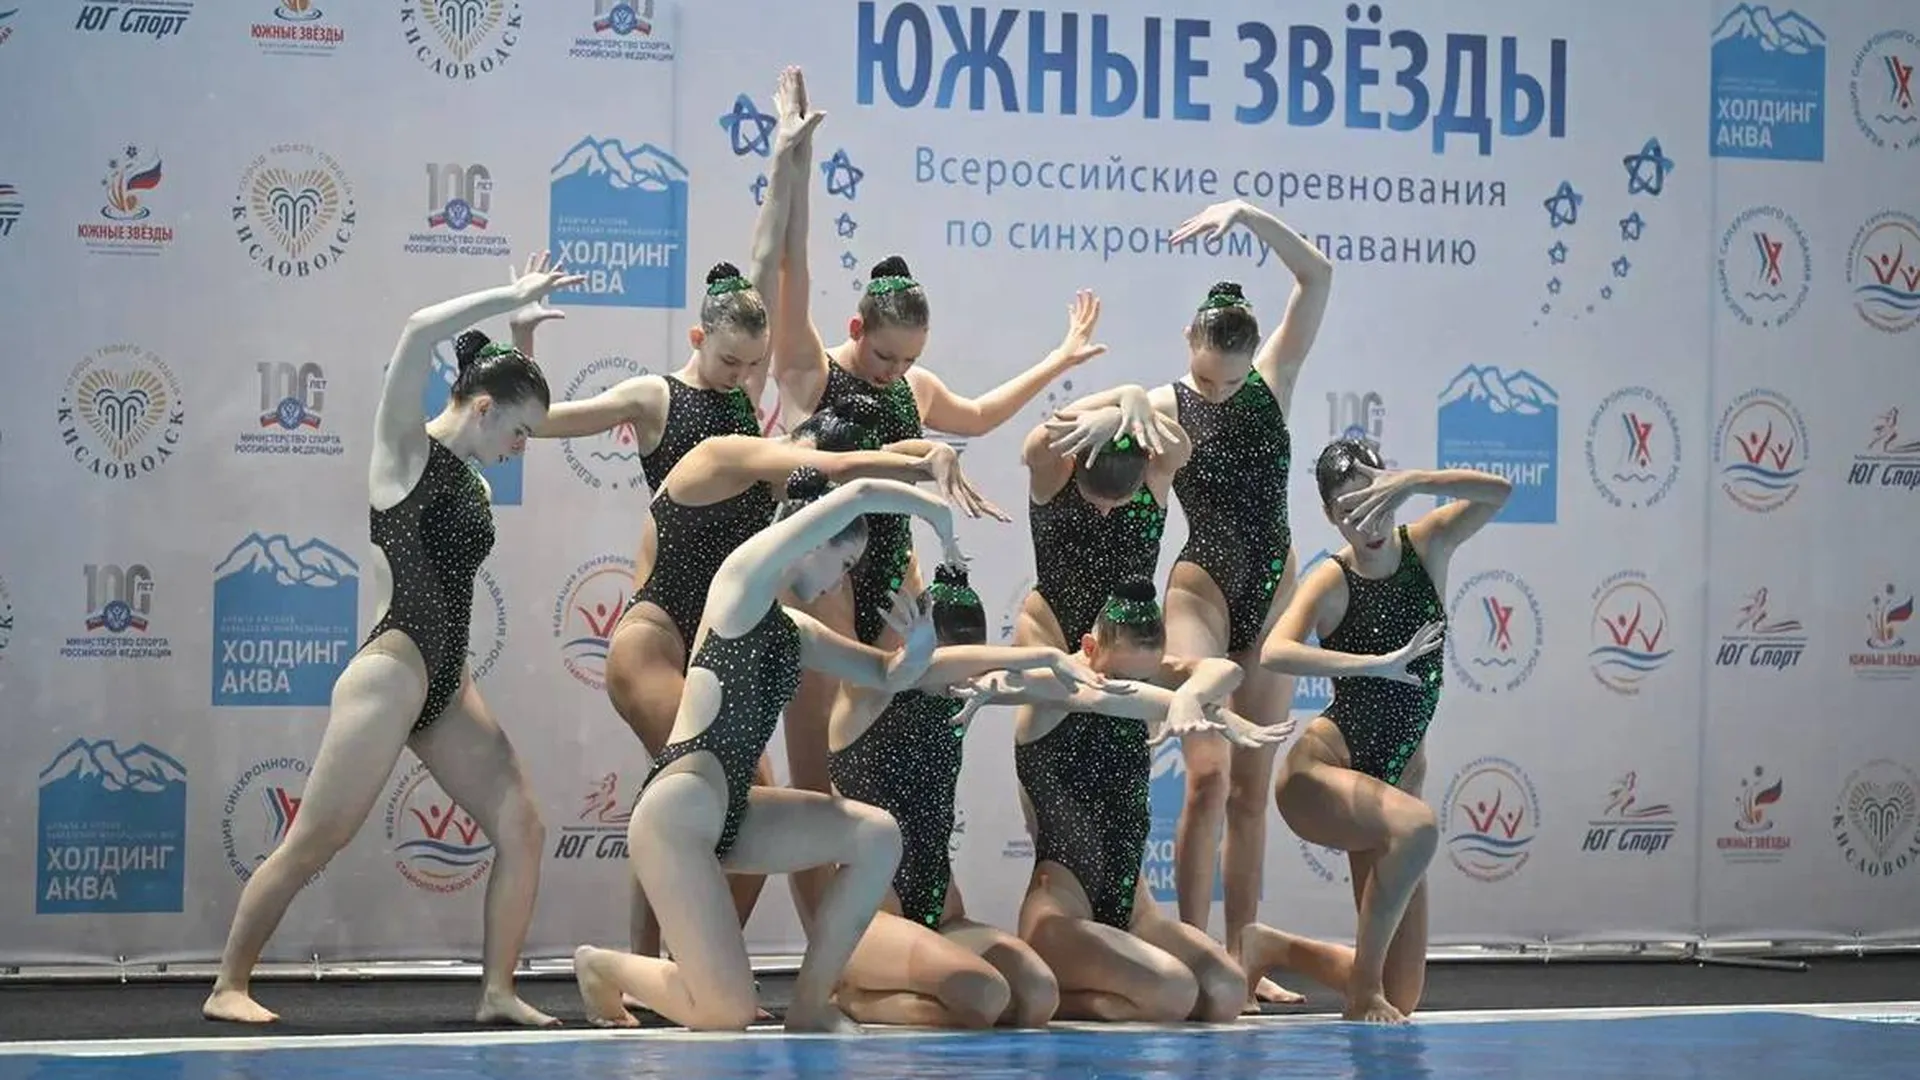 Синхронистки из Реутова выступили на Всероссийских соревнованиях «Южные звезды»